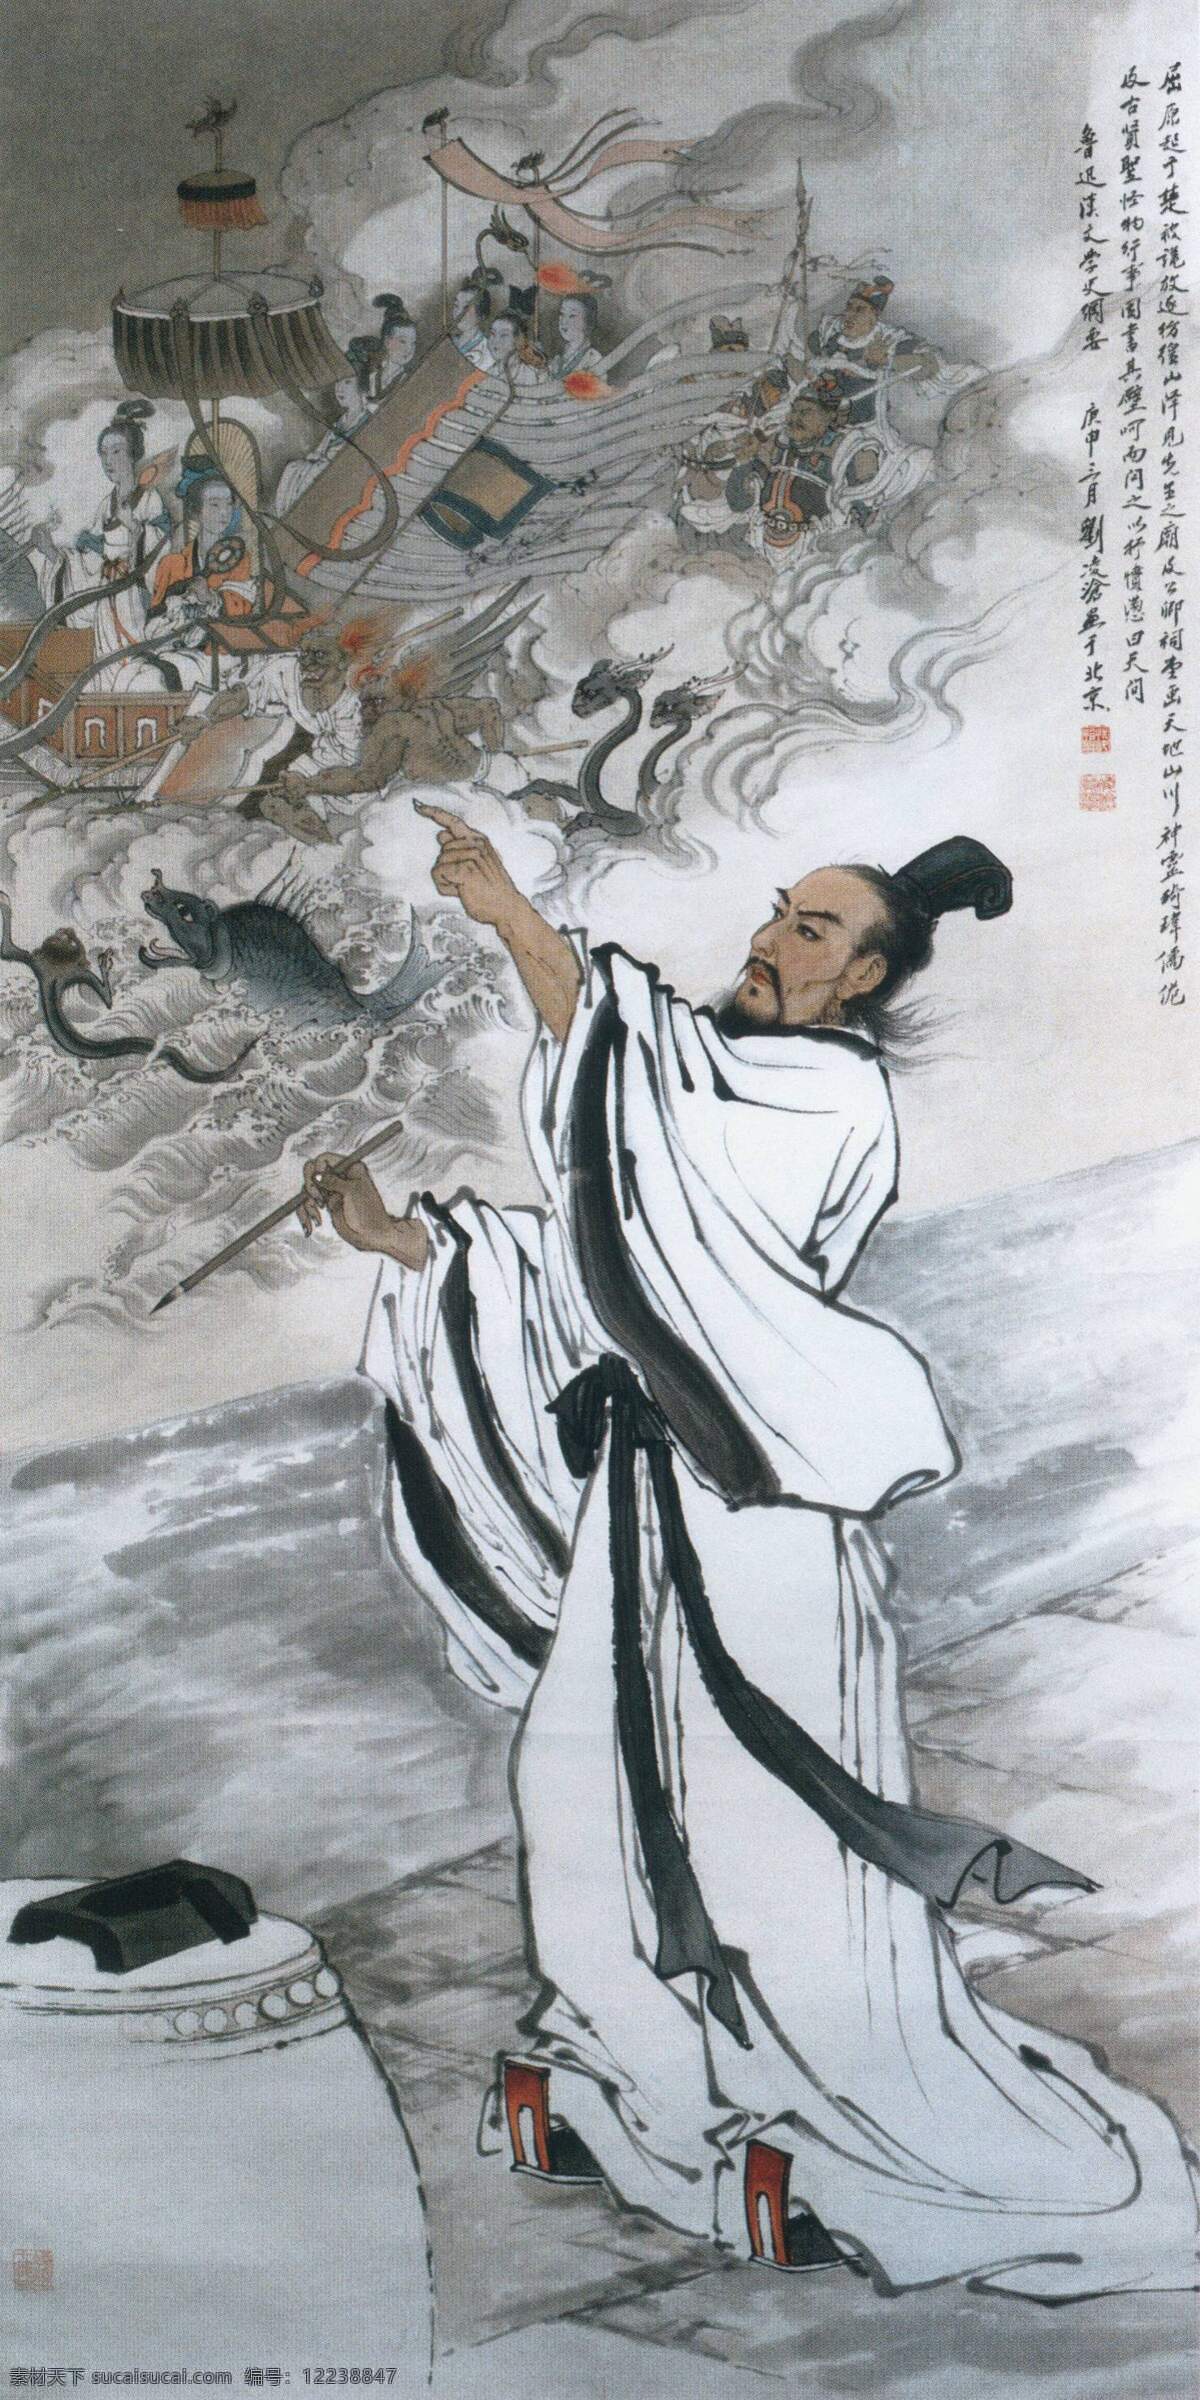 水墨 人物 二 十 五 中国 齐白石 文化艺术 美术绘画 水墨人物 设计图库